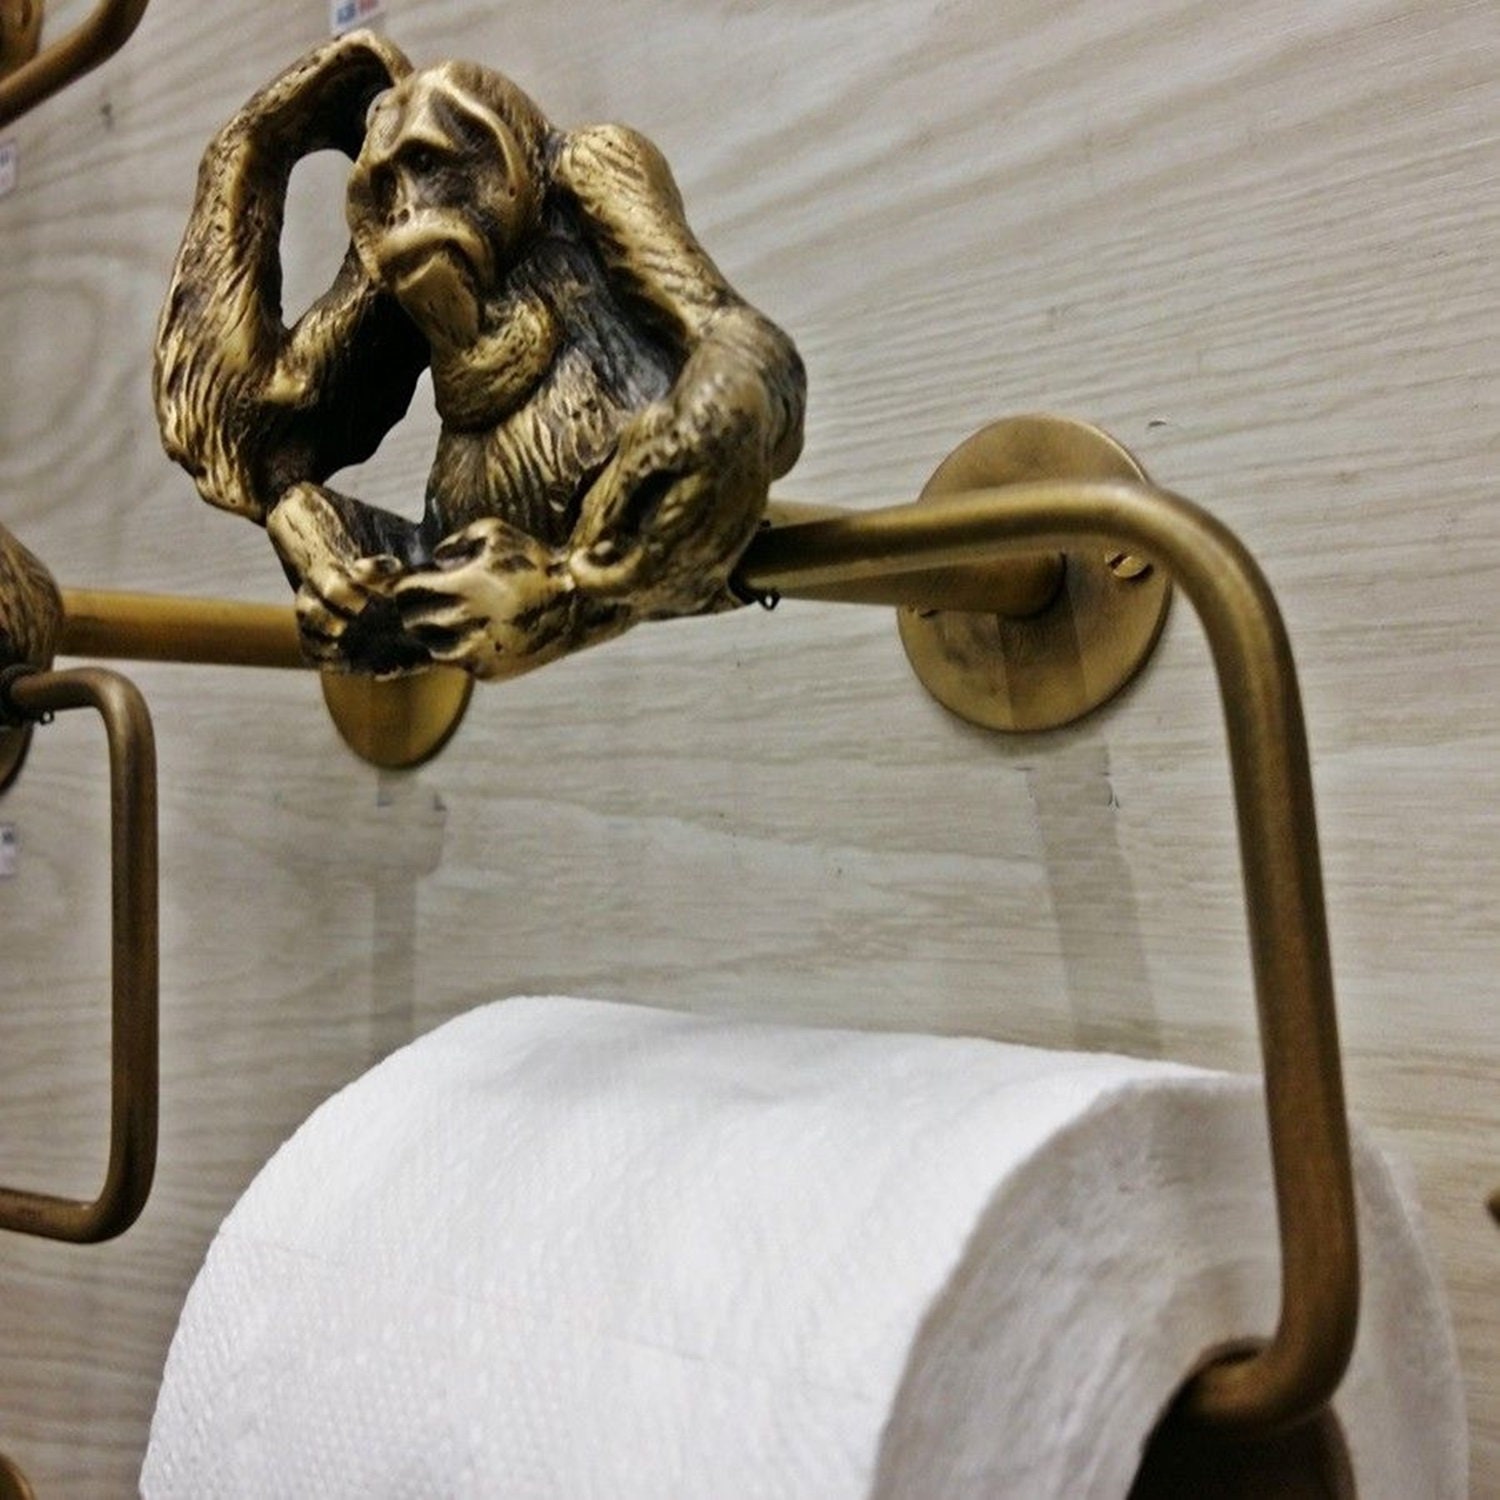 Brass Tissue Roll Paper Holder Hang ฺBIG FROG Vintage Toilet